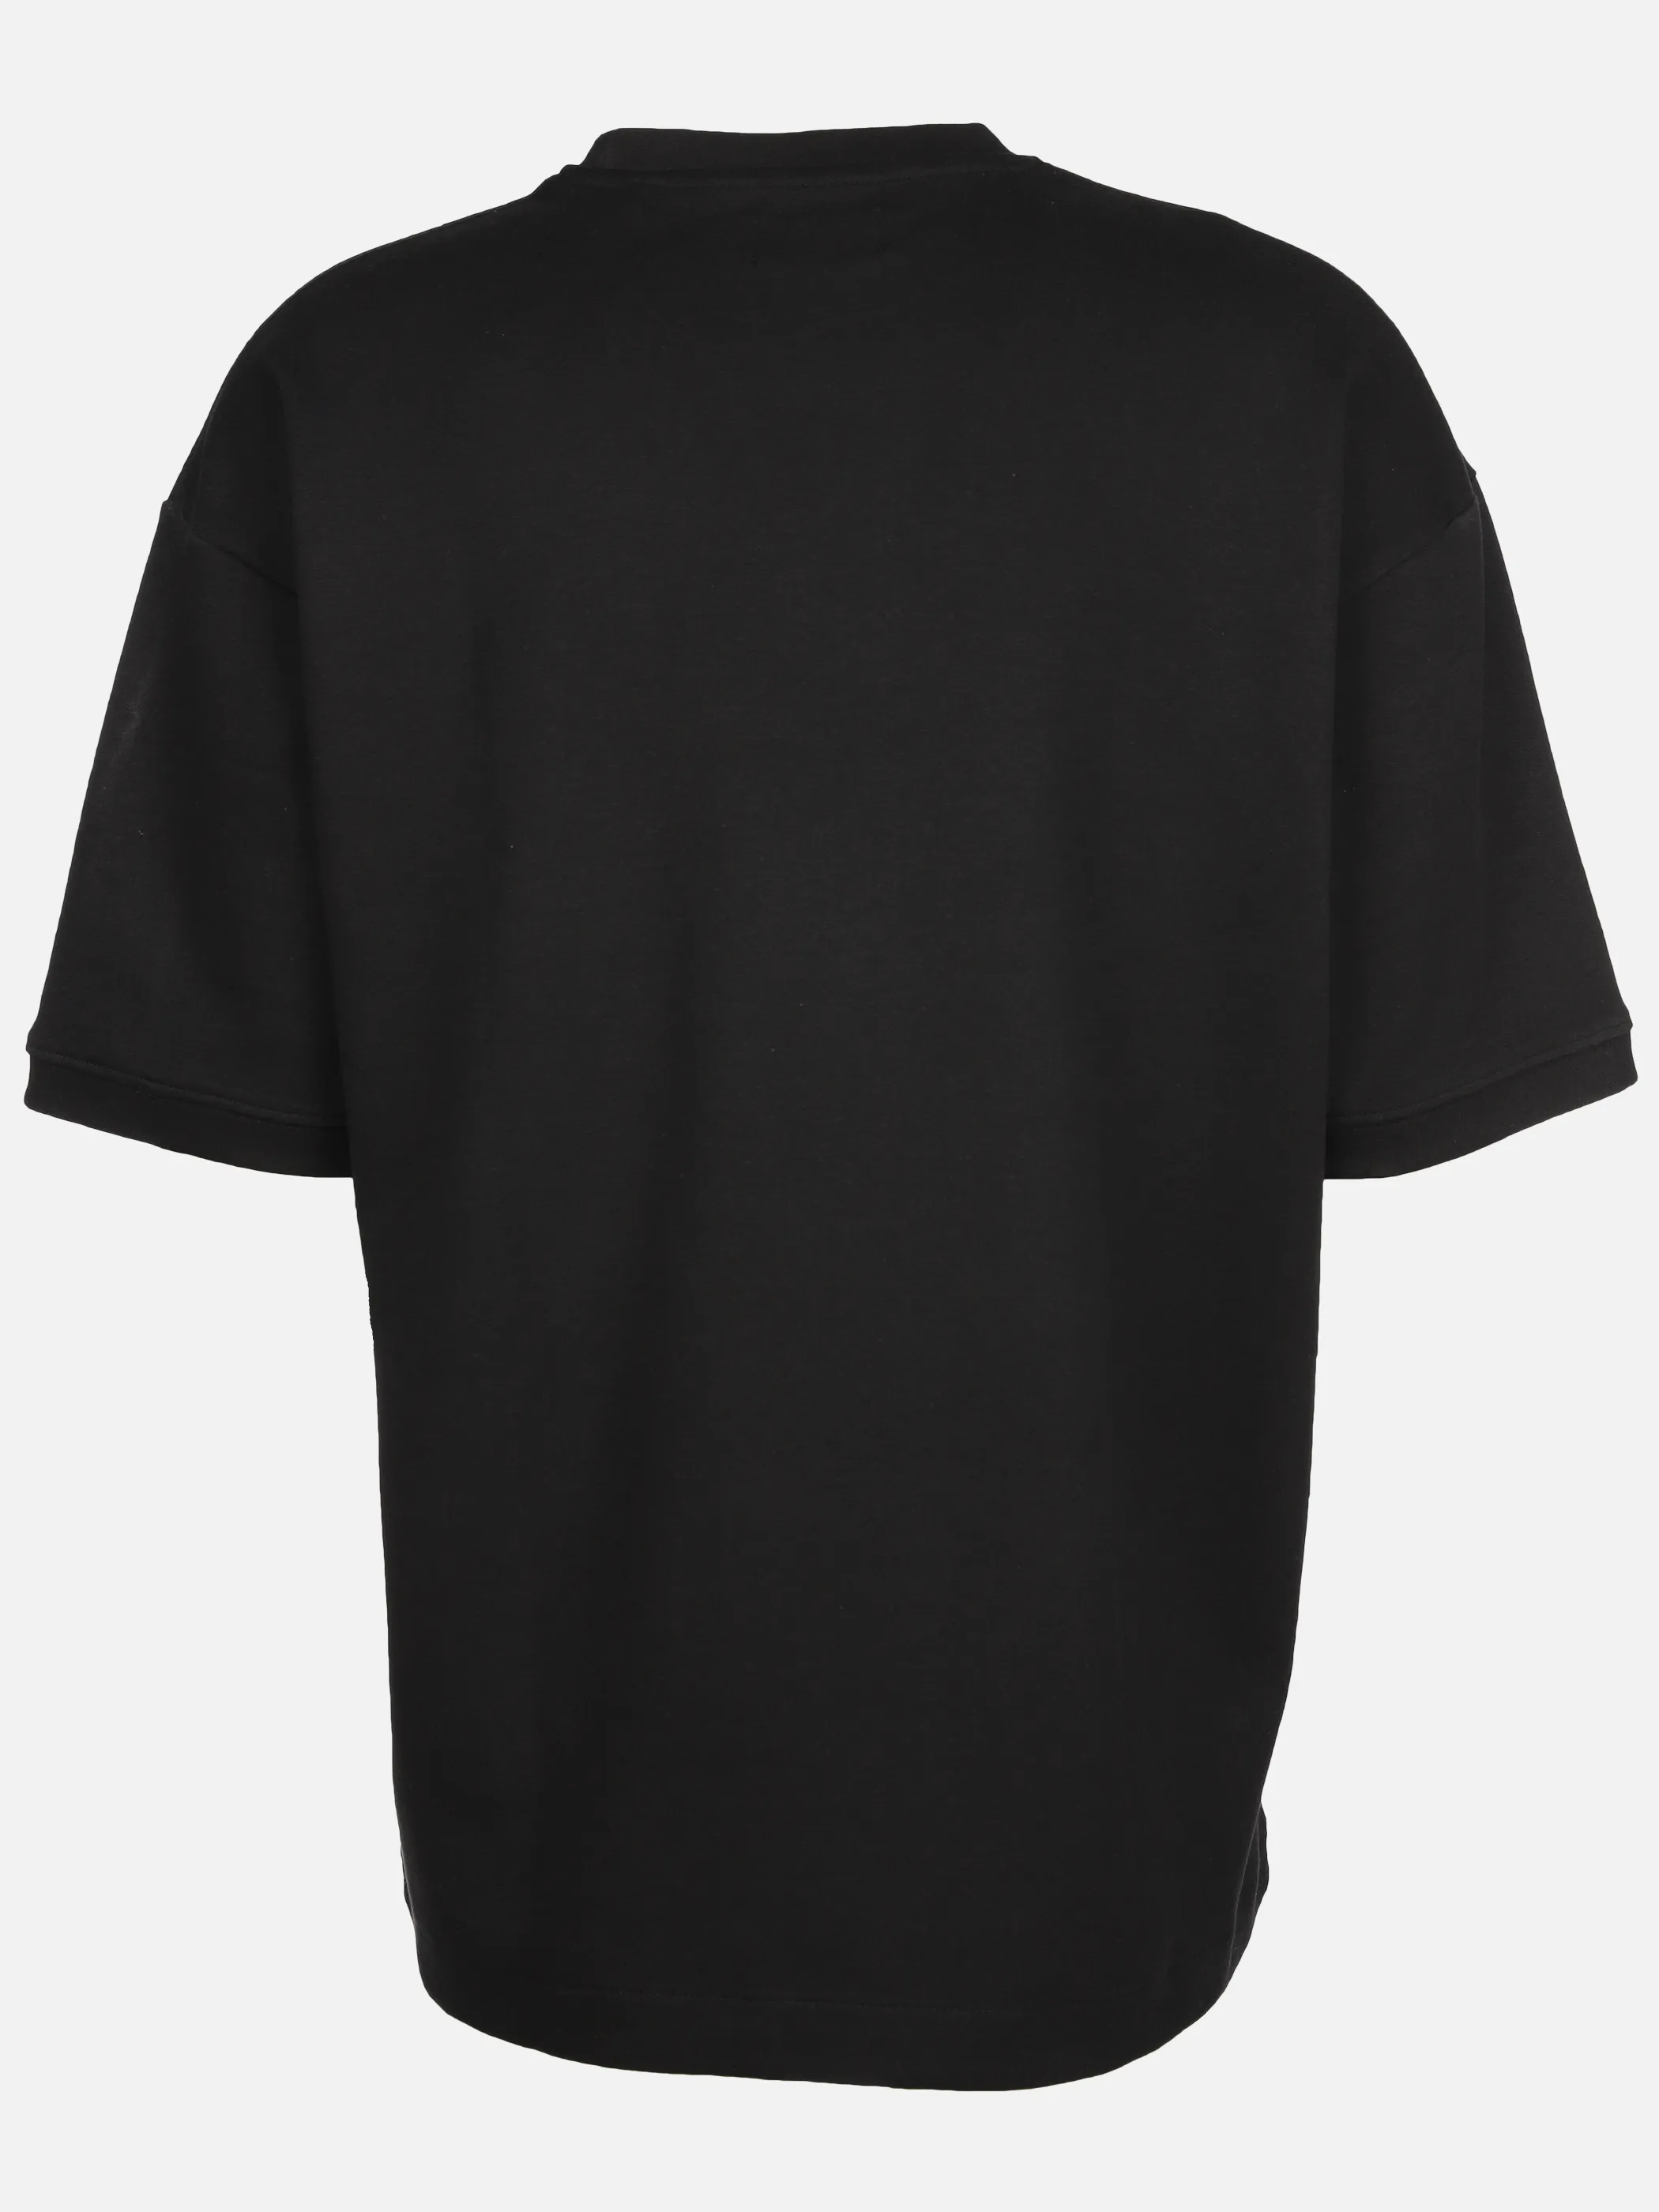 IX-O YF-He- T-Shirt Oversized Schwarz 891812 BLACK 2